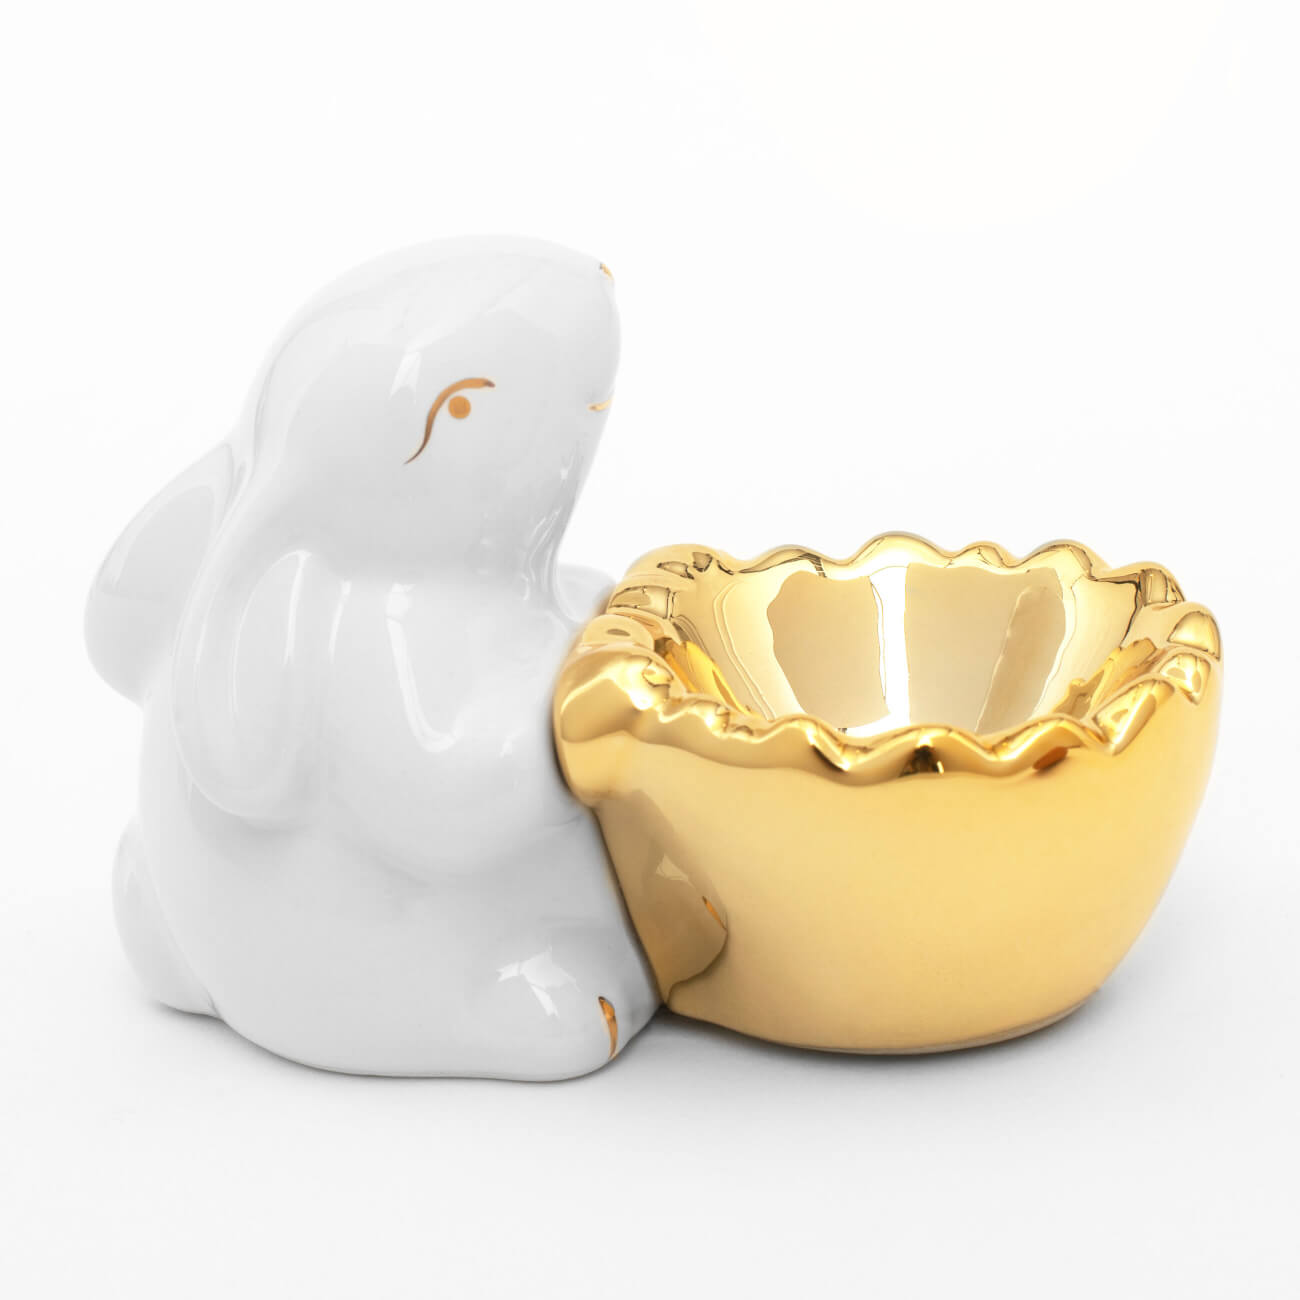 Подставка для яйца, 11 см, керамика, бело-золотистая, Кролик со скорлупой, Easter gold подставка для губки mayer